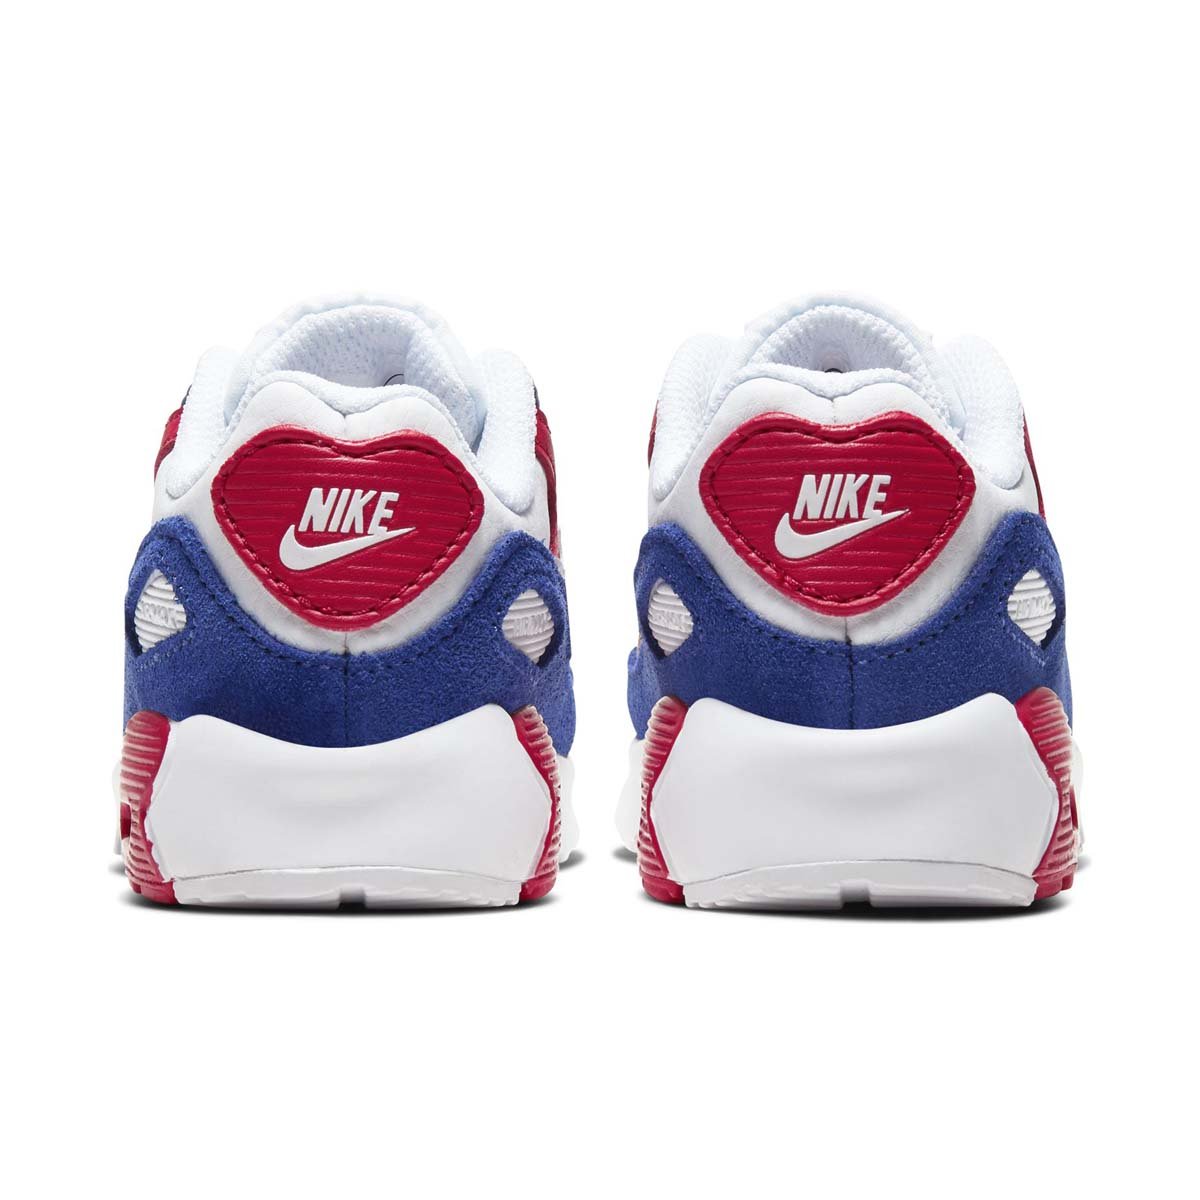 Nike Air Max 90 Baby/Toddler Shoe